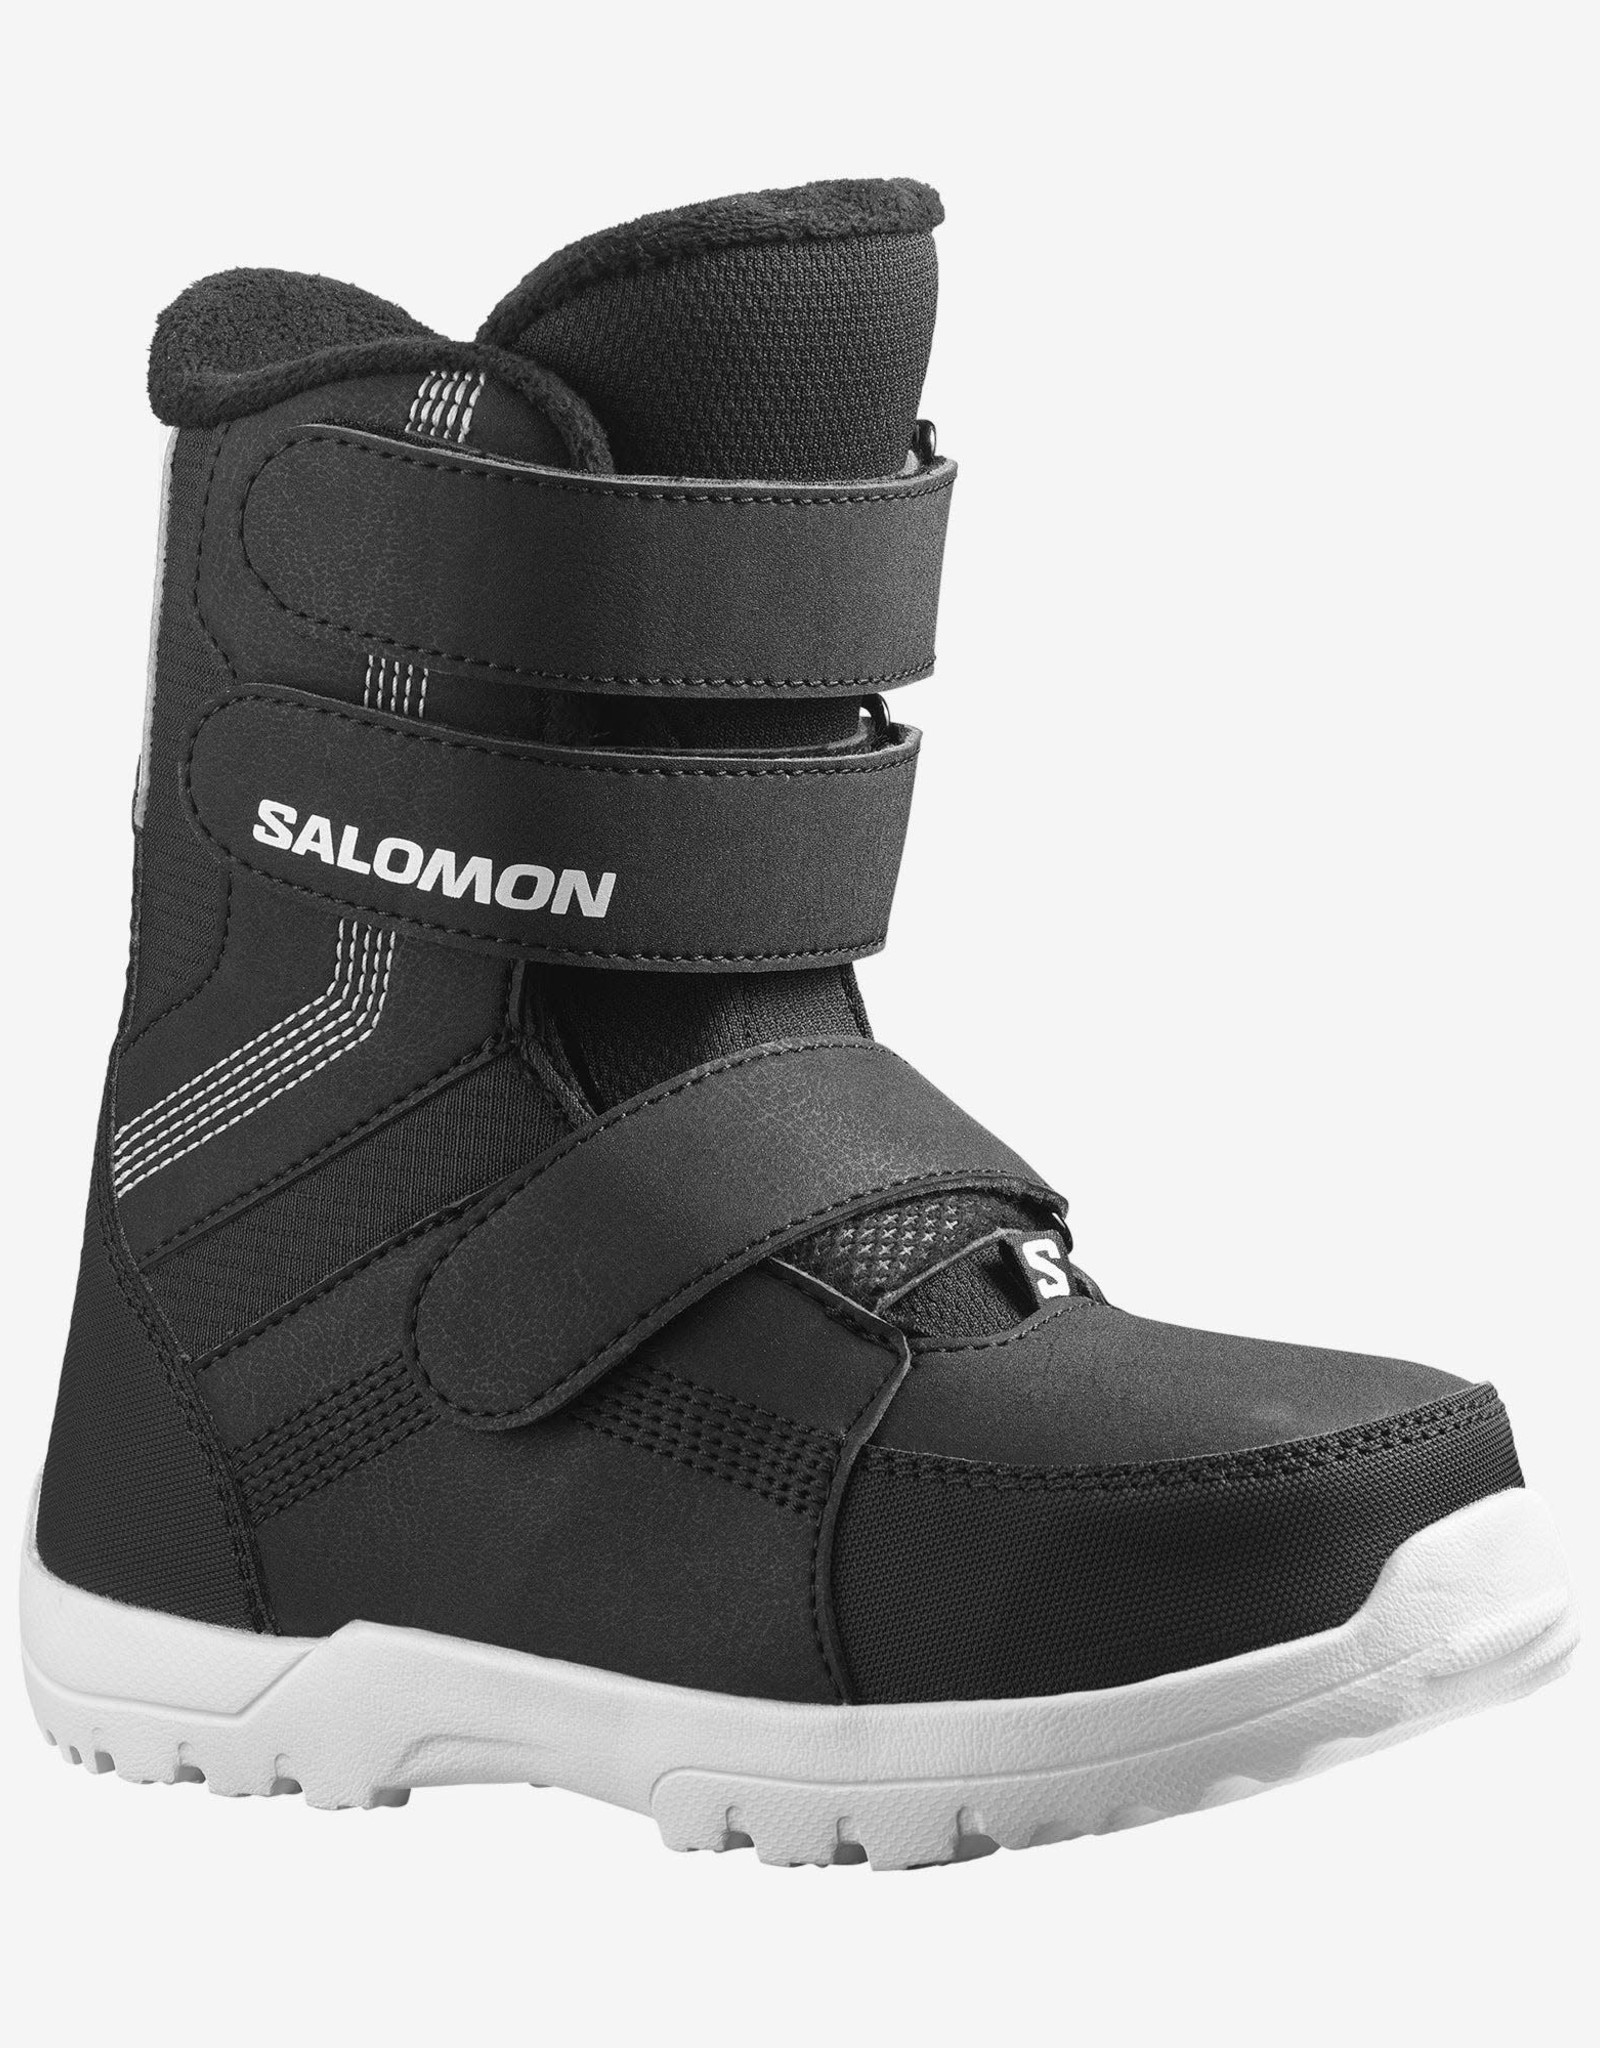 SALOMON Salomon WHIPSTAR Jr. Boot  Black/Black/White